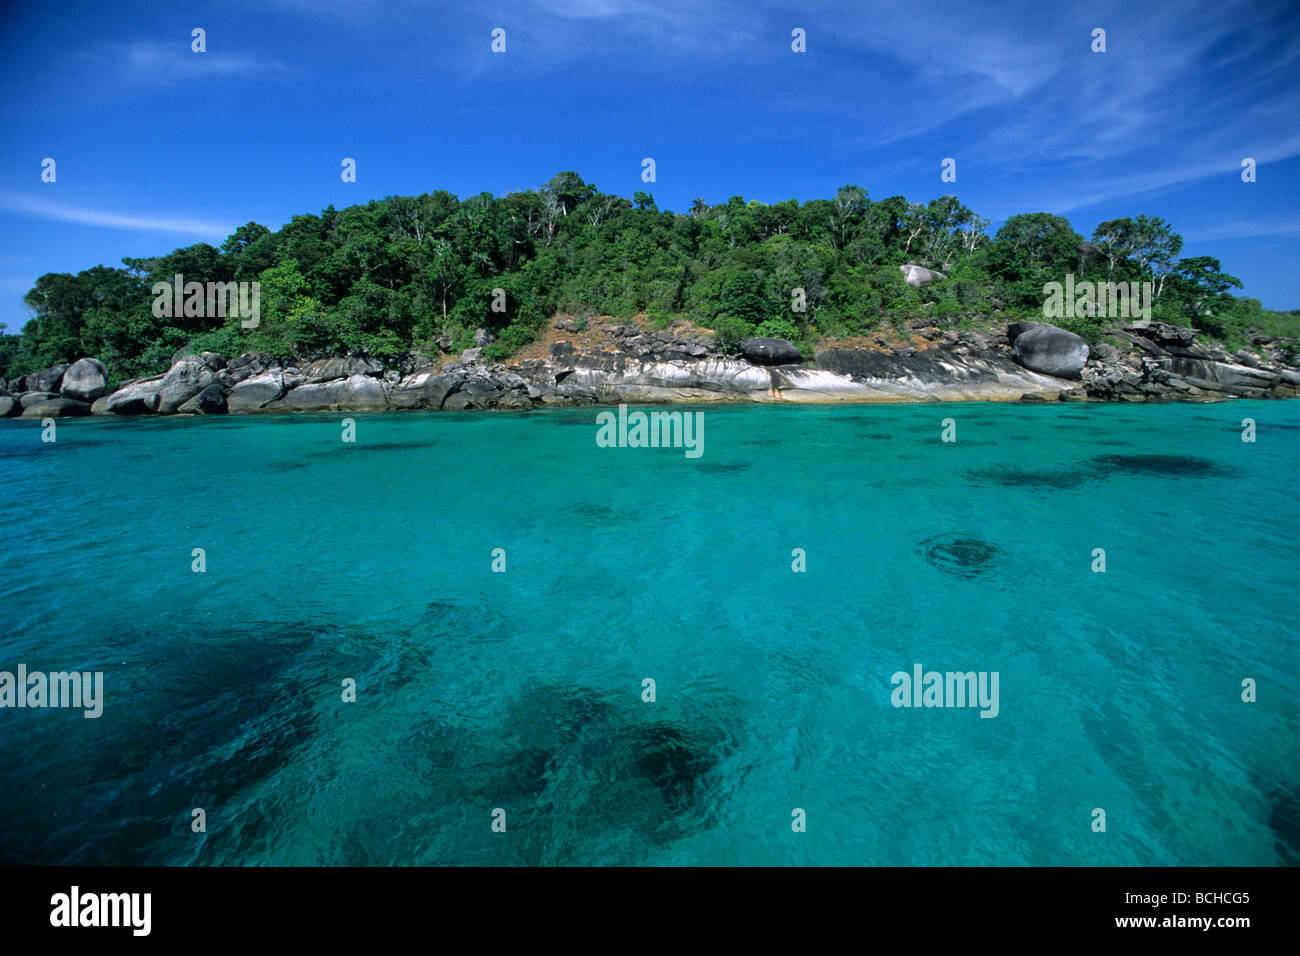 Lagoon at Similan Islands Andaman Sea Thailand Stock Photo